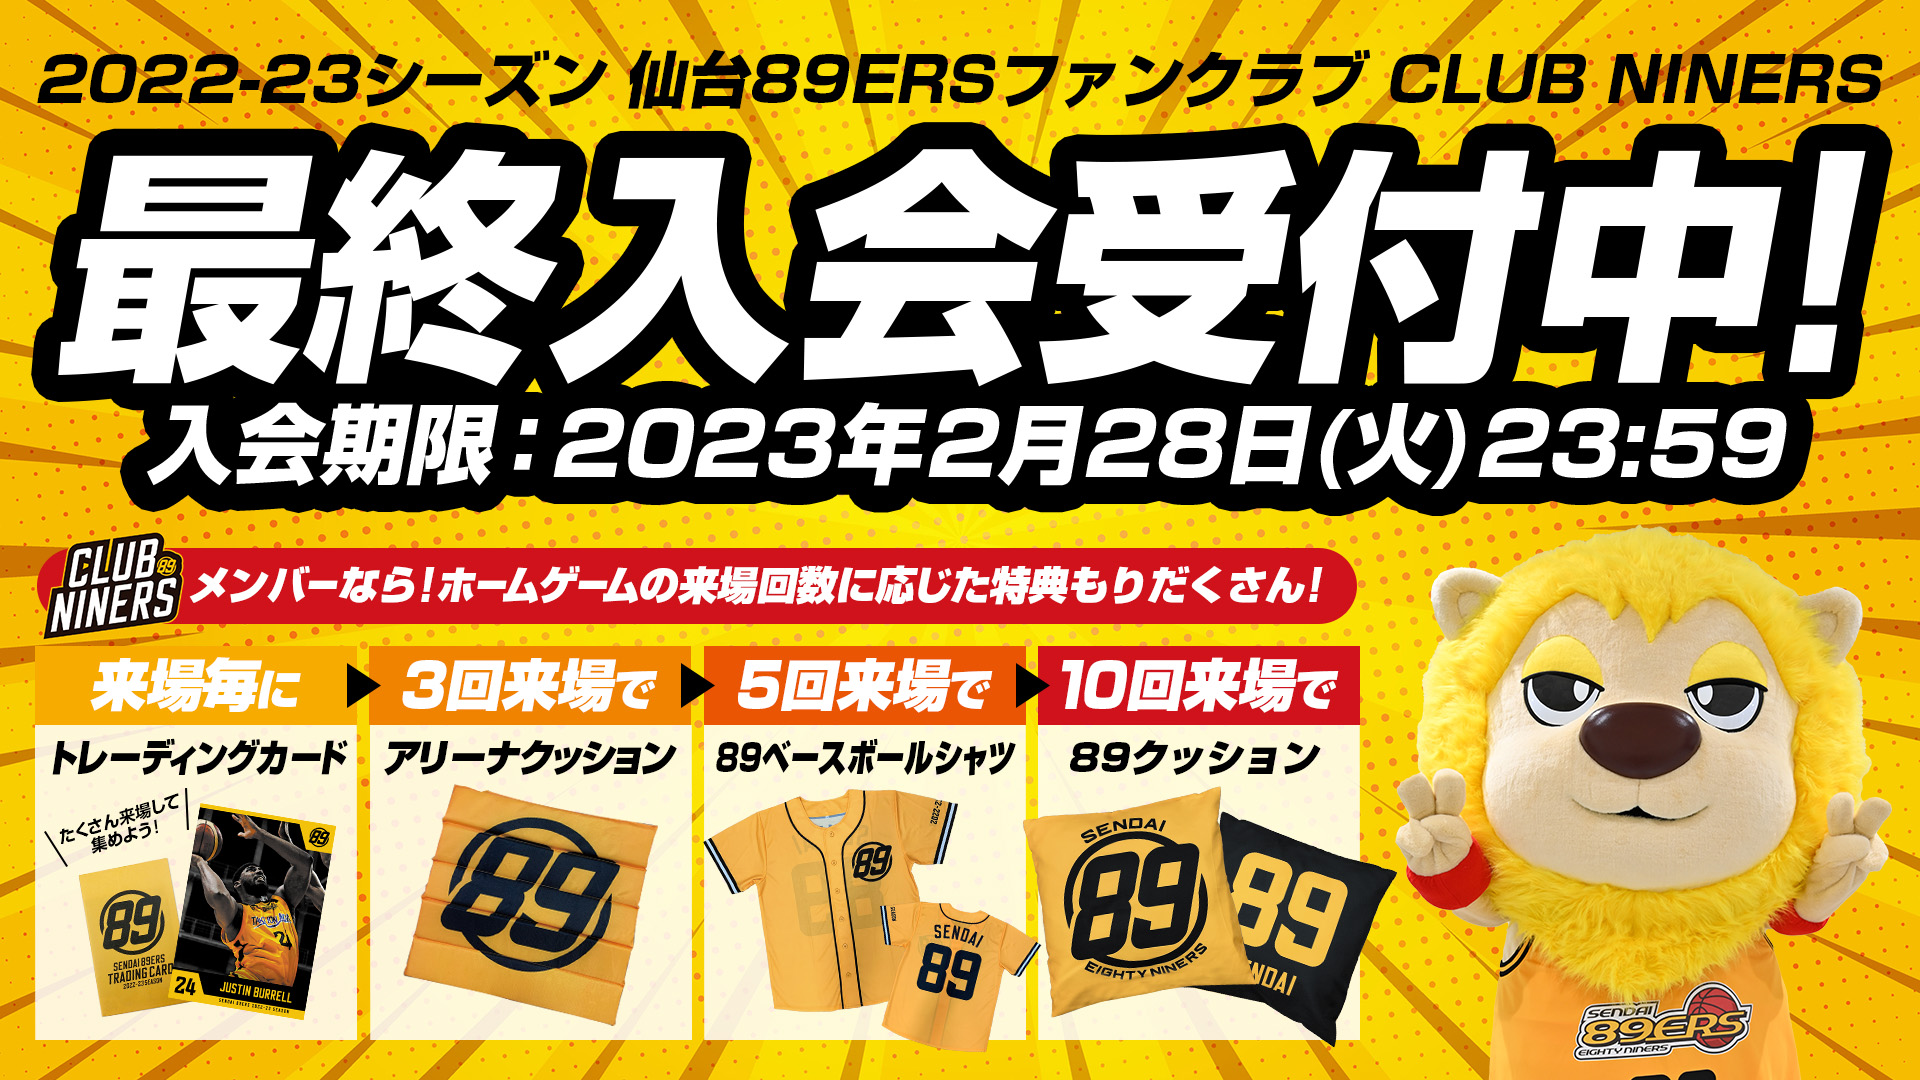 2022-23シーズンCLUB NINERS最終入会受付中! | 仙台89ERS